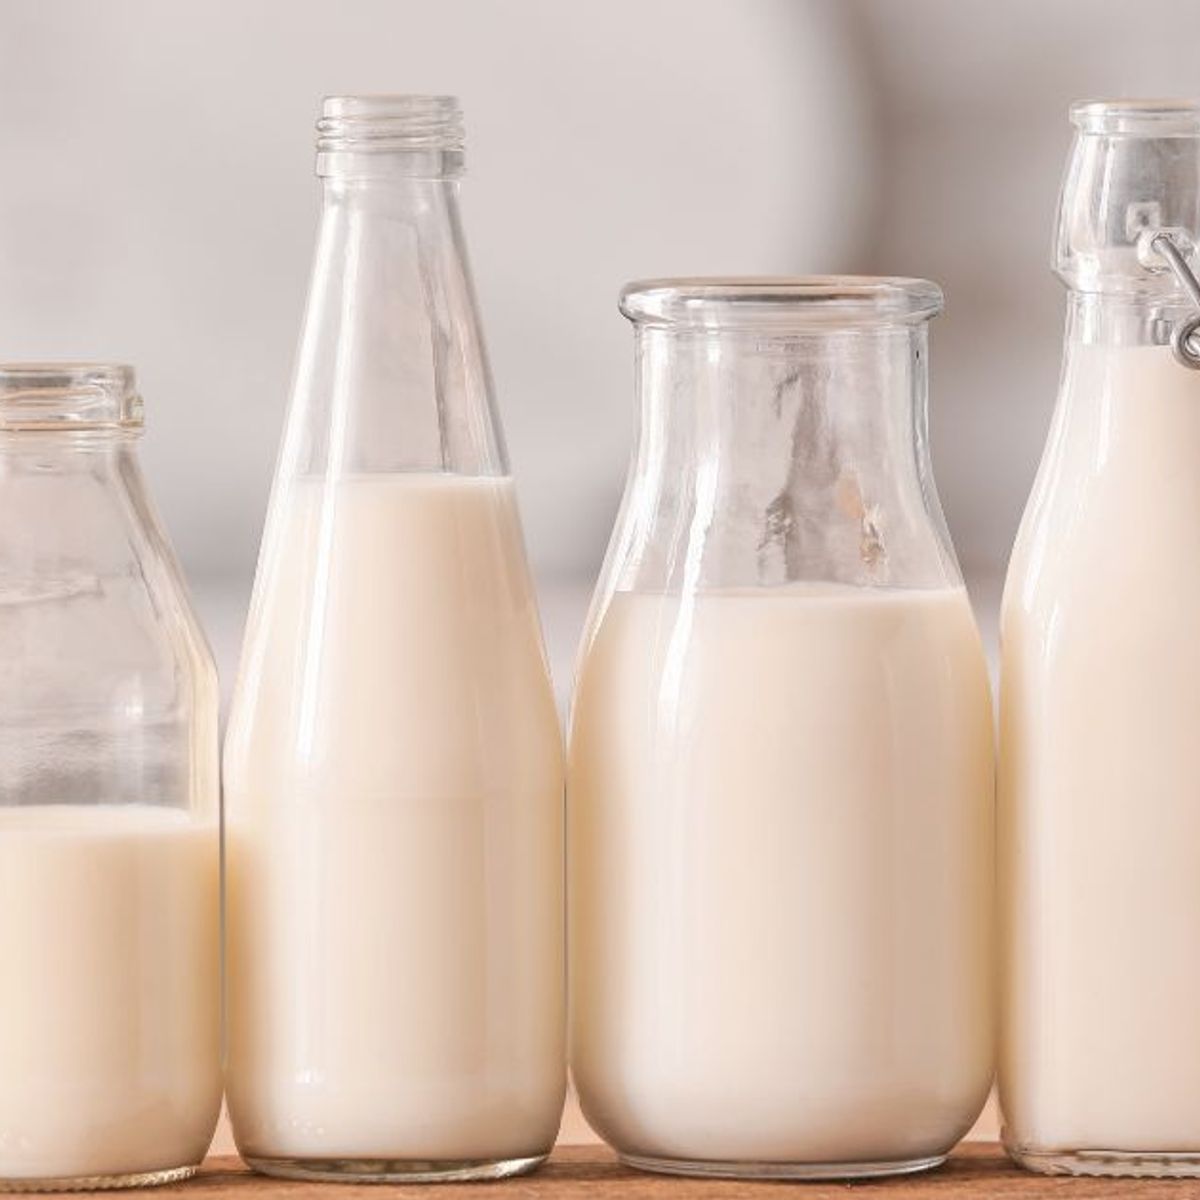 Des bouteilles de lait de plusieurs grandes marques rappelées dans toute la  France